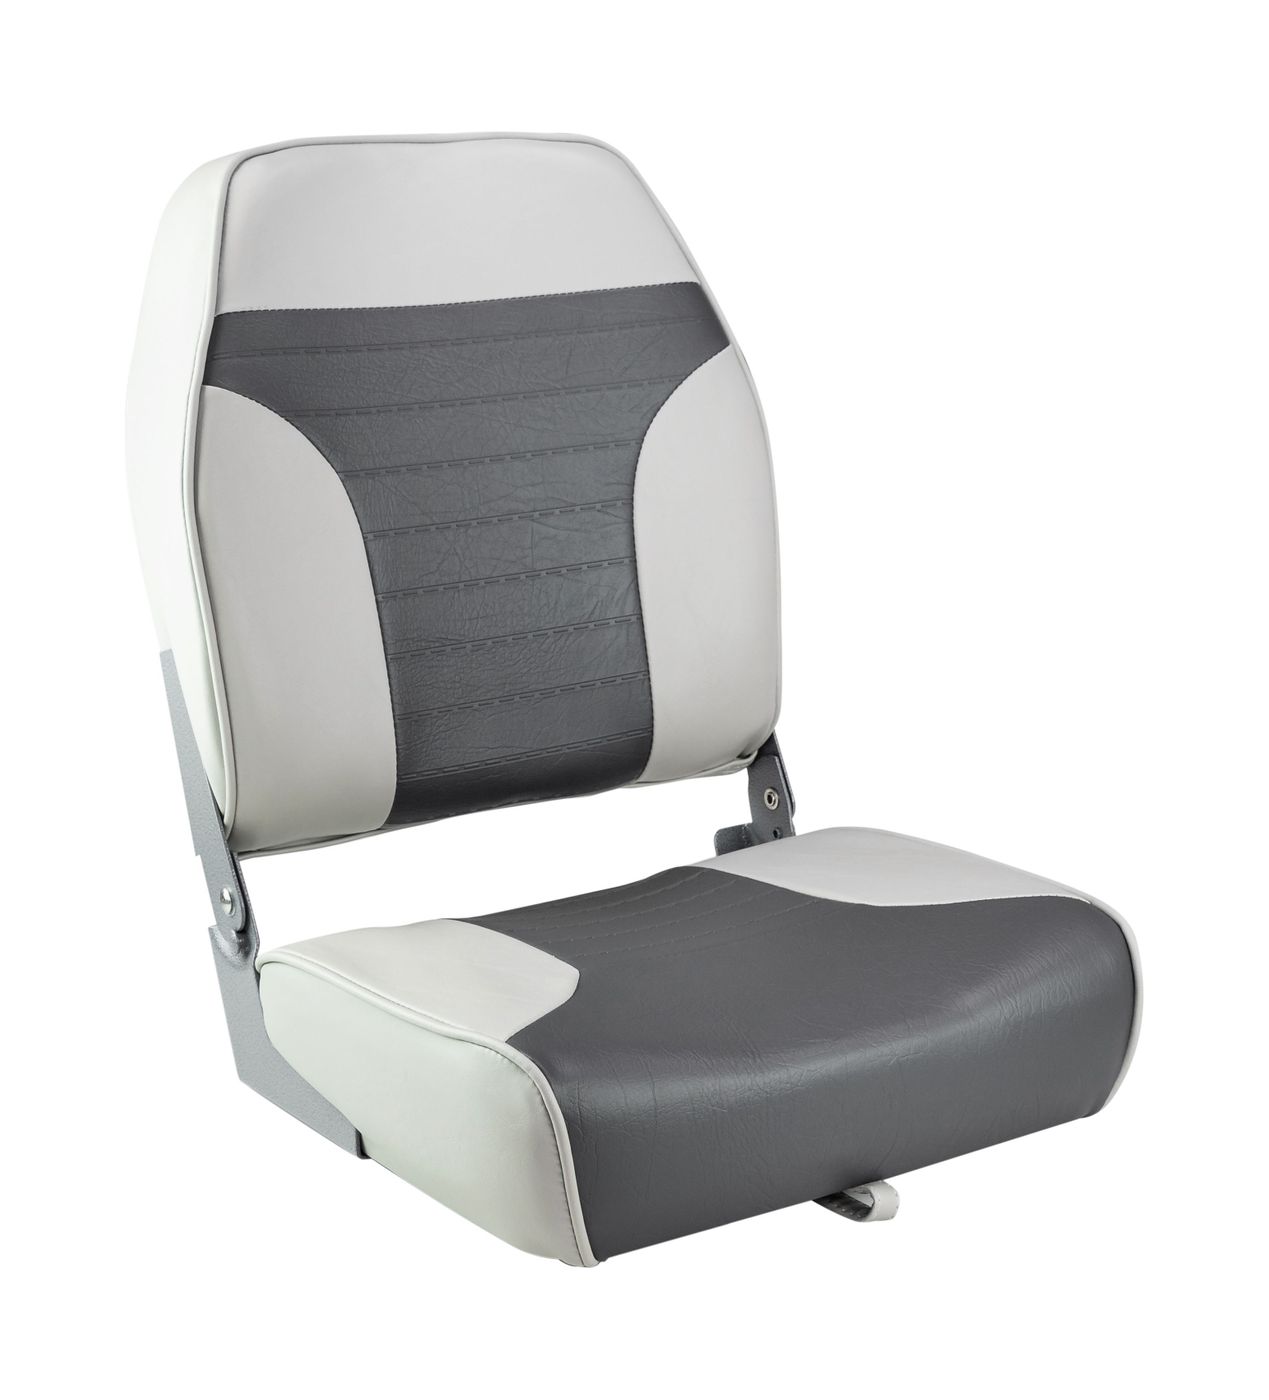 Кресло складное мягкое ECONOMY с высокой спинкой, цвет серый/темно-серый 1040663 кресло складное мягкое skipper серый темно серый 1061057